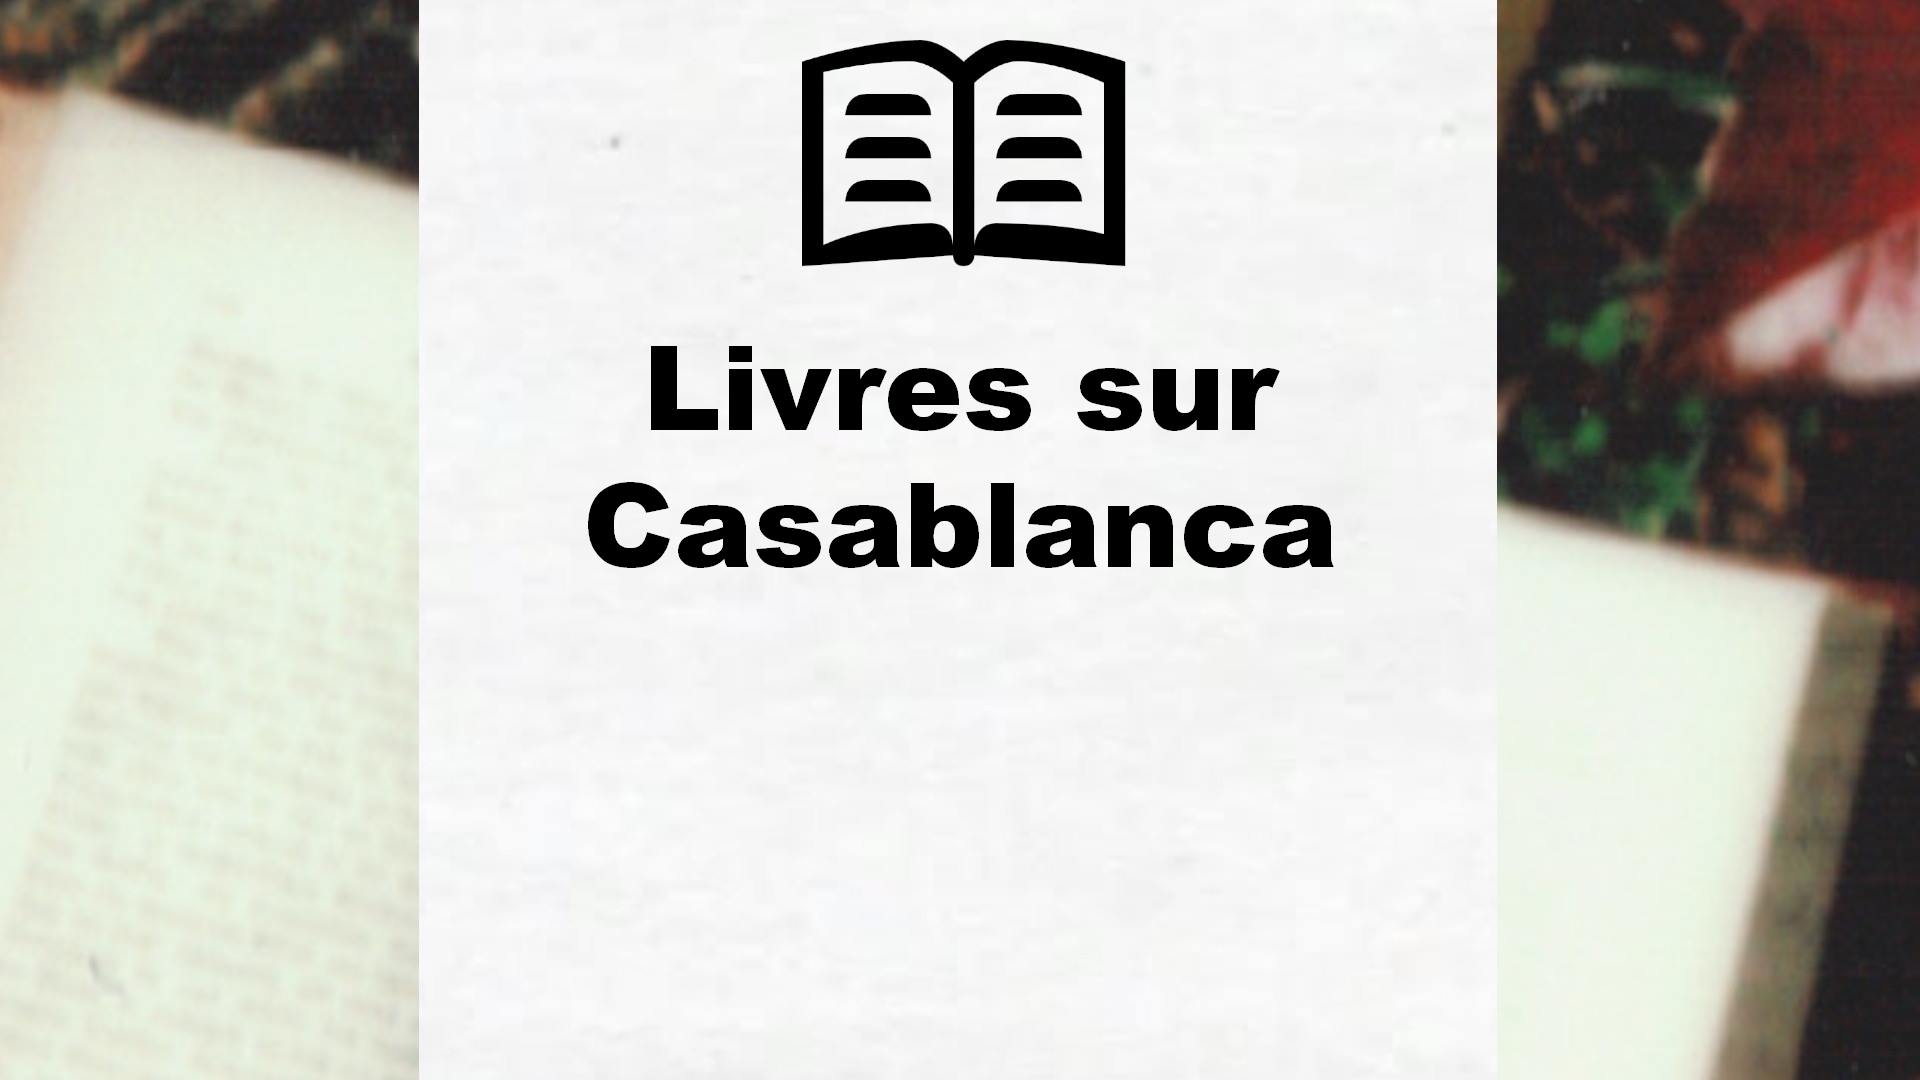 Livres sur Casablanca